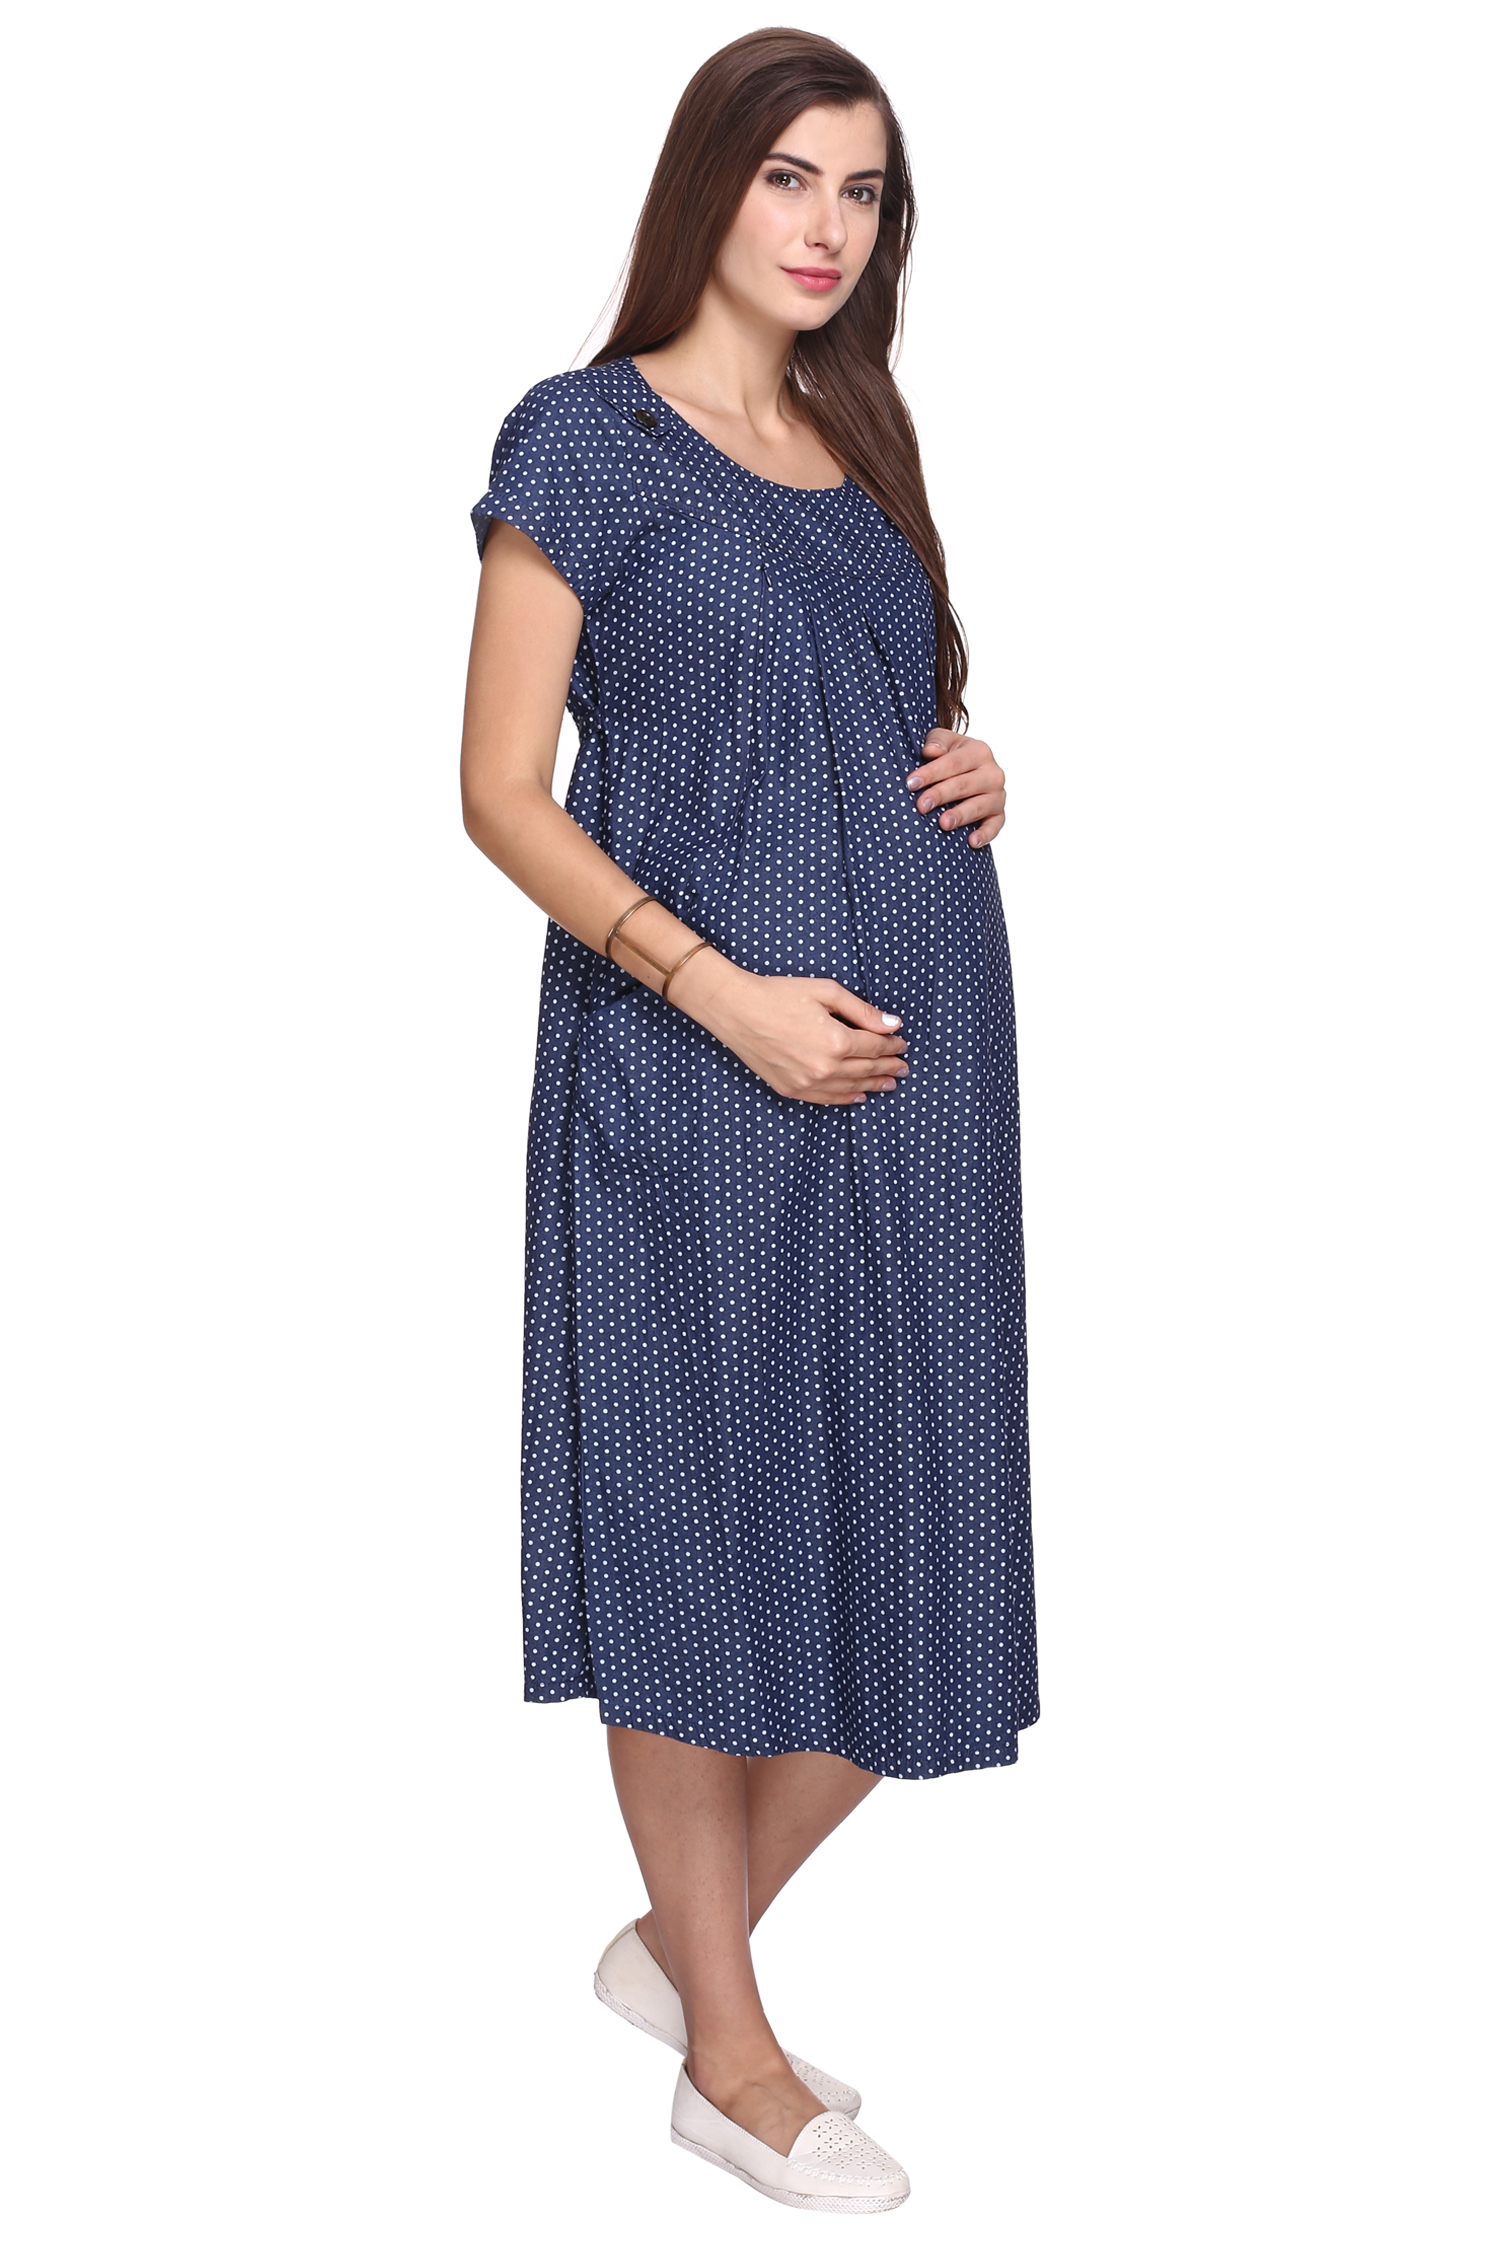 Buy MomToBe Women's Denim Maternity Dress, Blue Online @ ₹1549 from ...